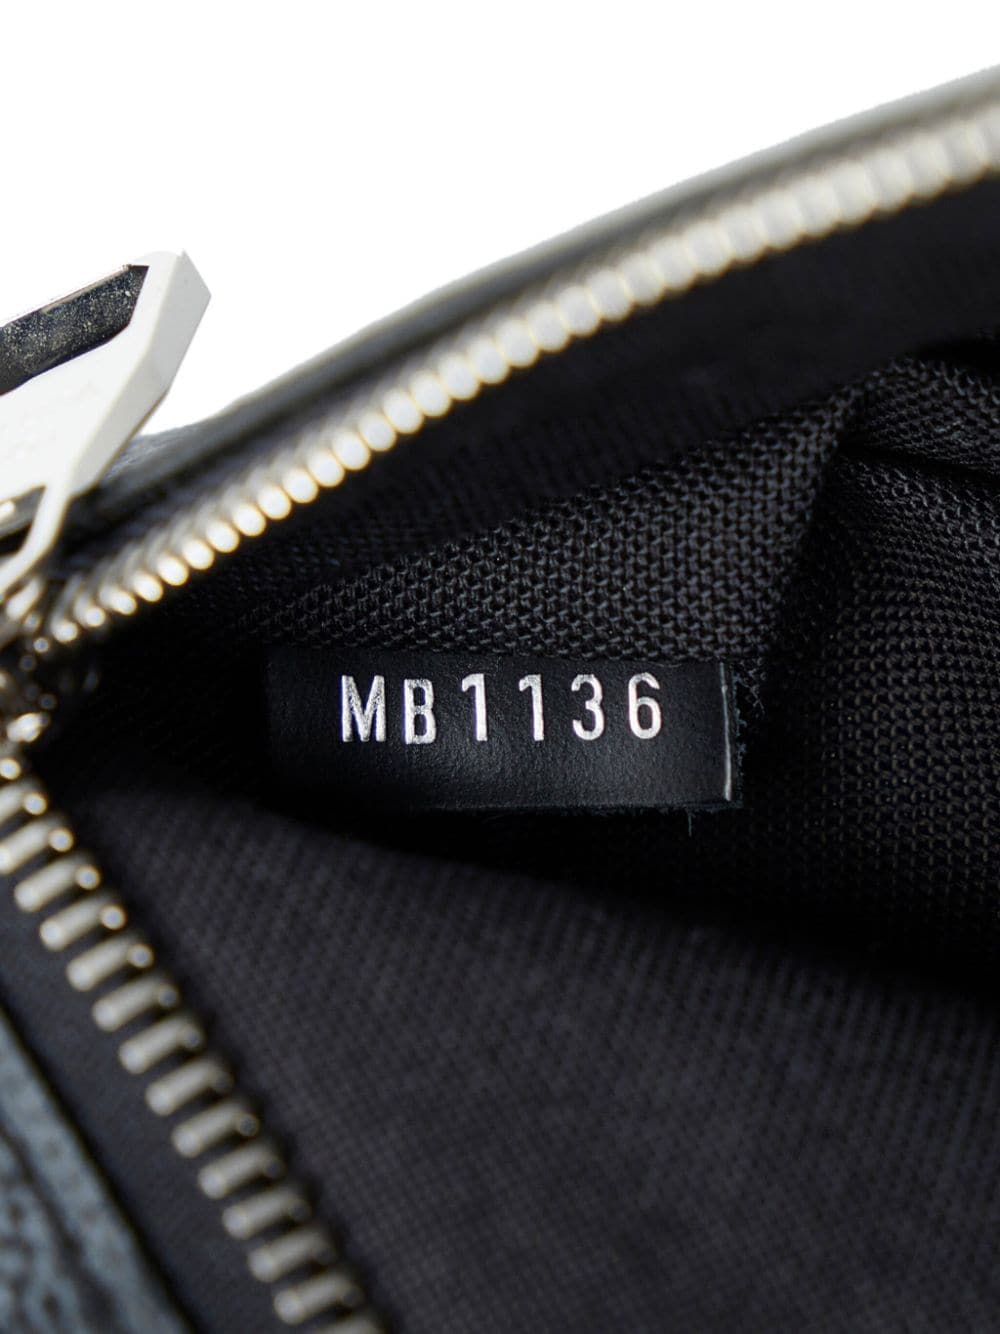 Louis Vuitton Ambler Damier Graphite Belt Bag - THE PURSE AFFAIR